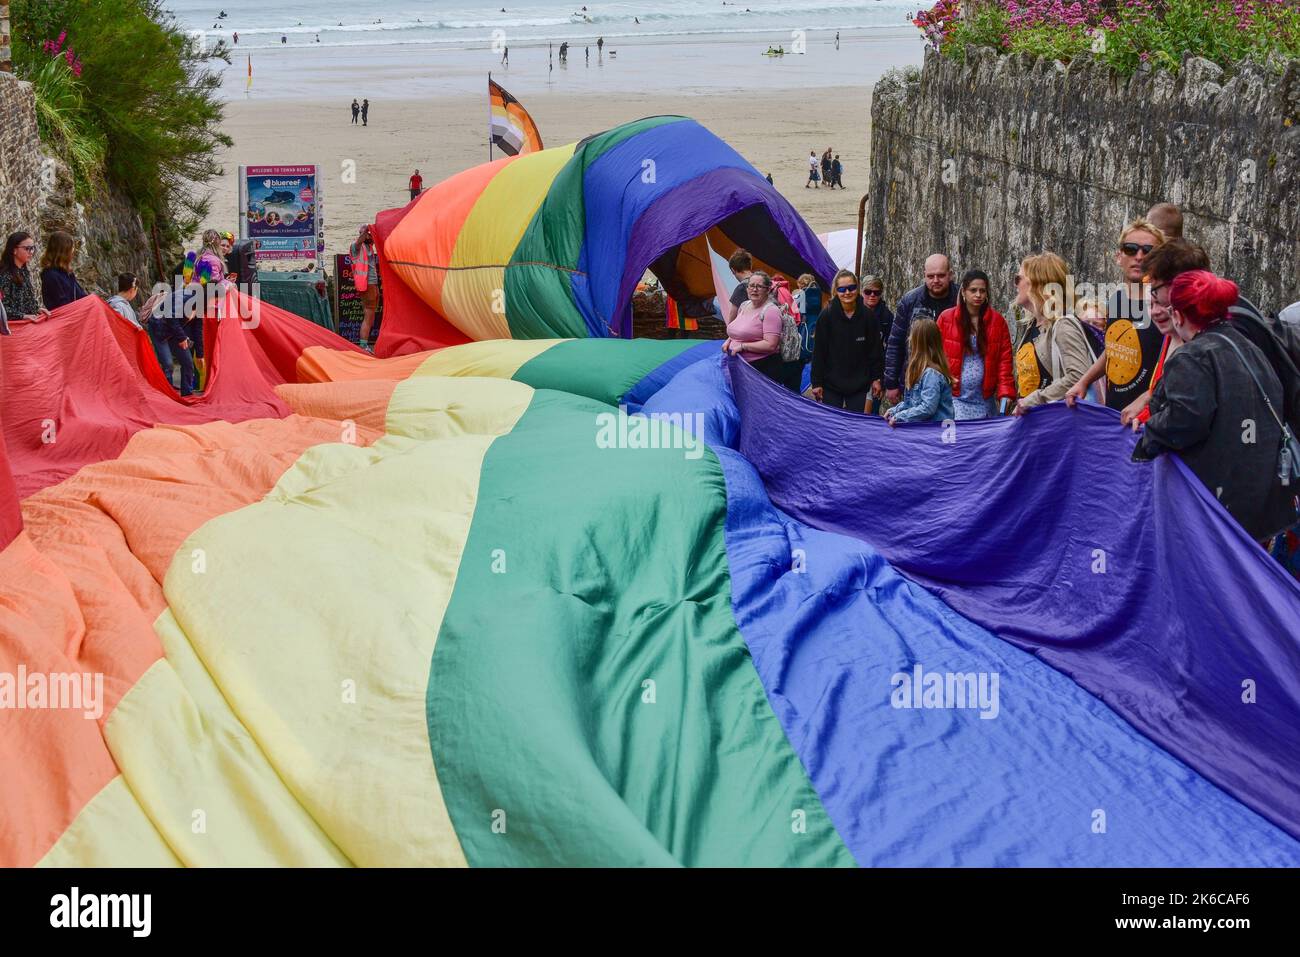 Das riesige bunte Cornwall ist stolz auf das Pride-Flaggenbanner, das von den Teilnehmern der Parade im Zentrum von Newquay in Großbritannien gehalten wird. Stockfoto